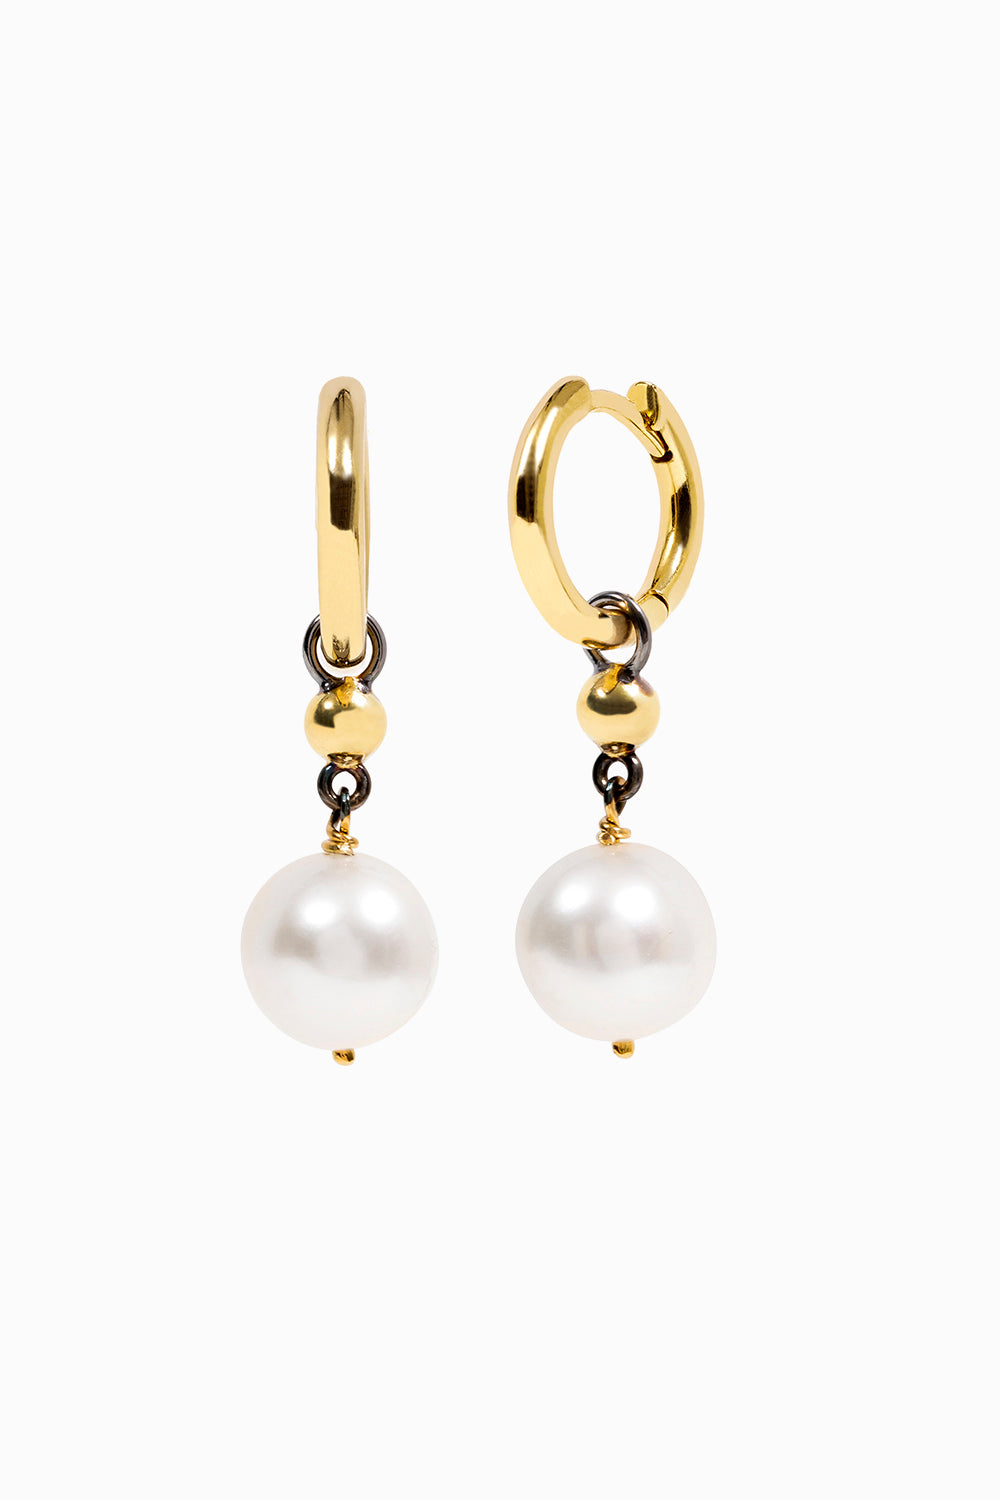 Pearls and balls hoop earrings